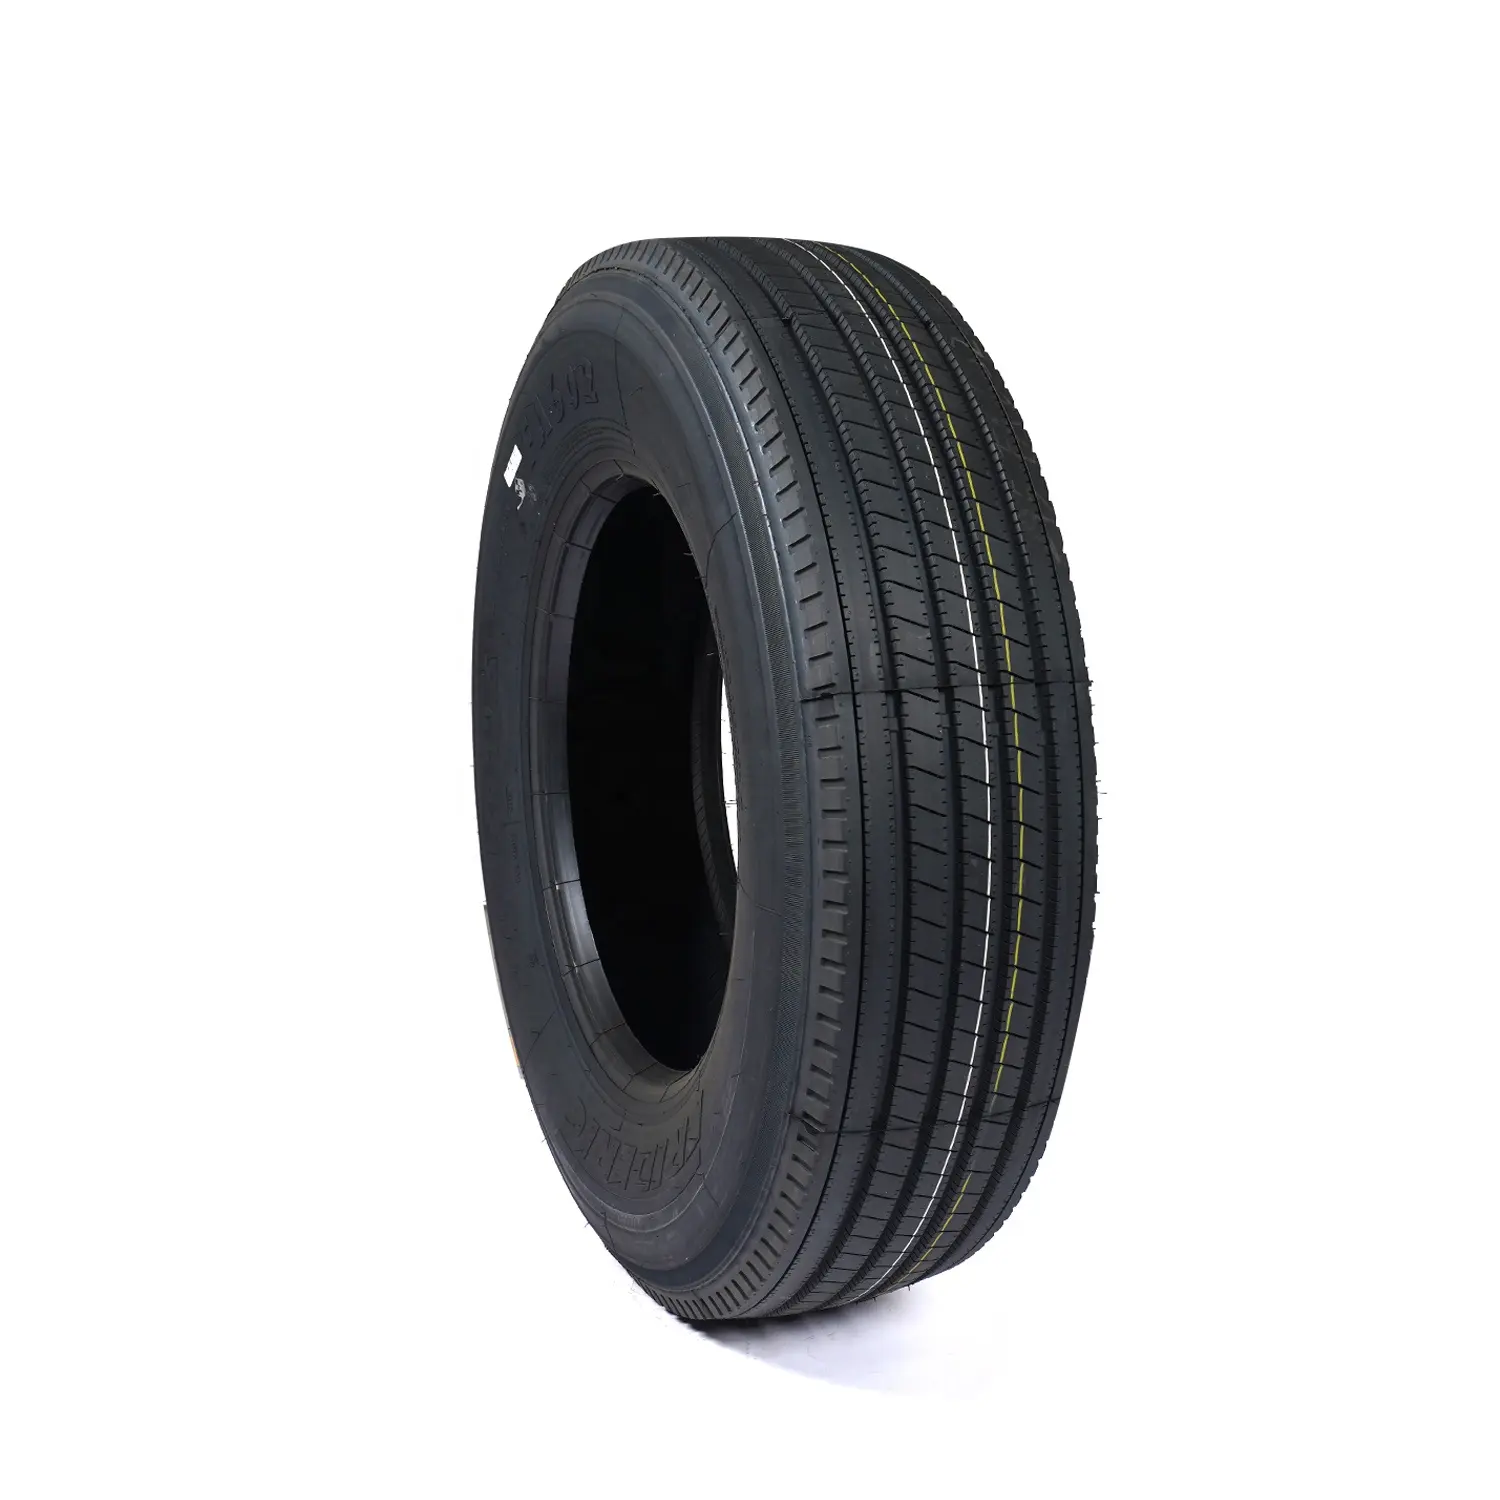 Chinesischer Hersteller 295/75 r22.5 315/80 R22.5 günstiger Preis Reifen Reifen neue Marke Großhandel LKW-Reifen